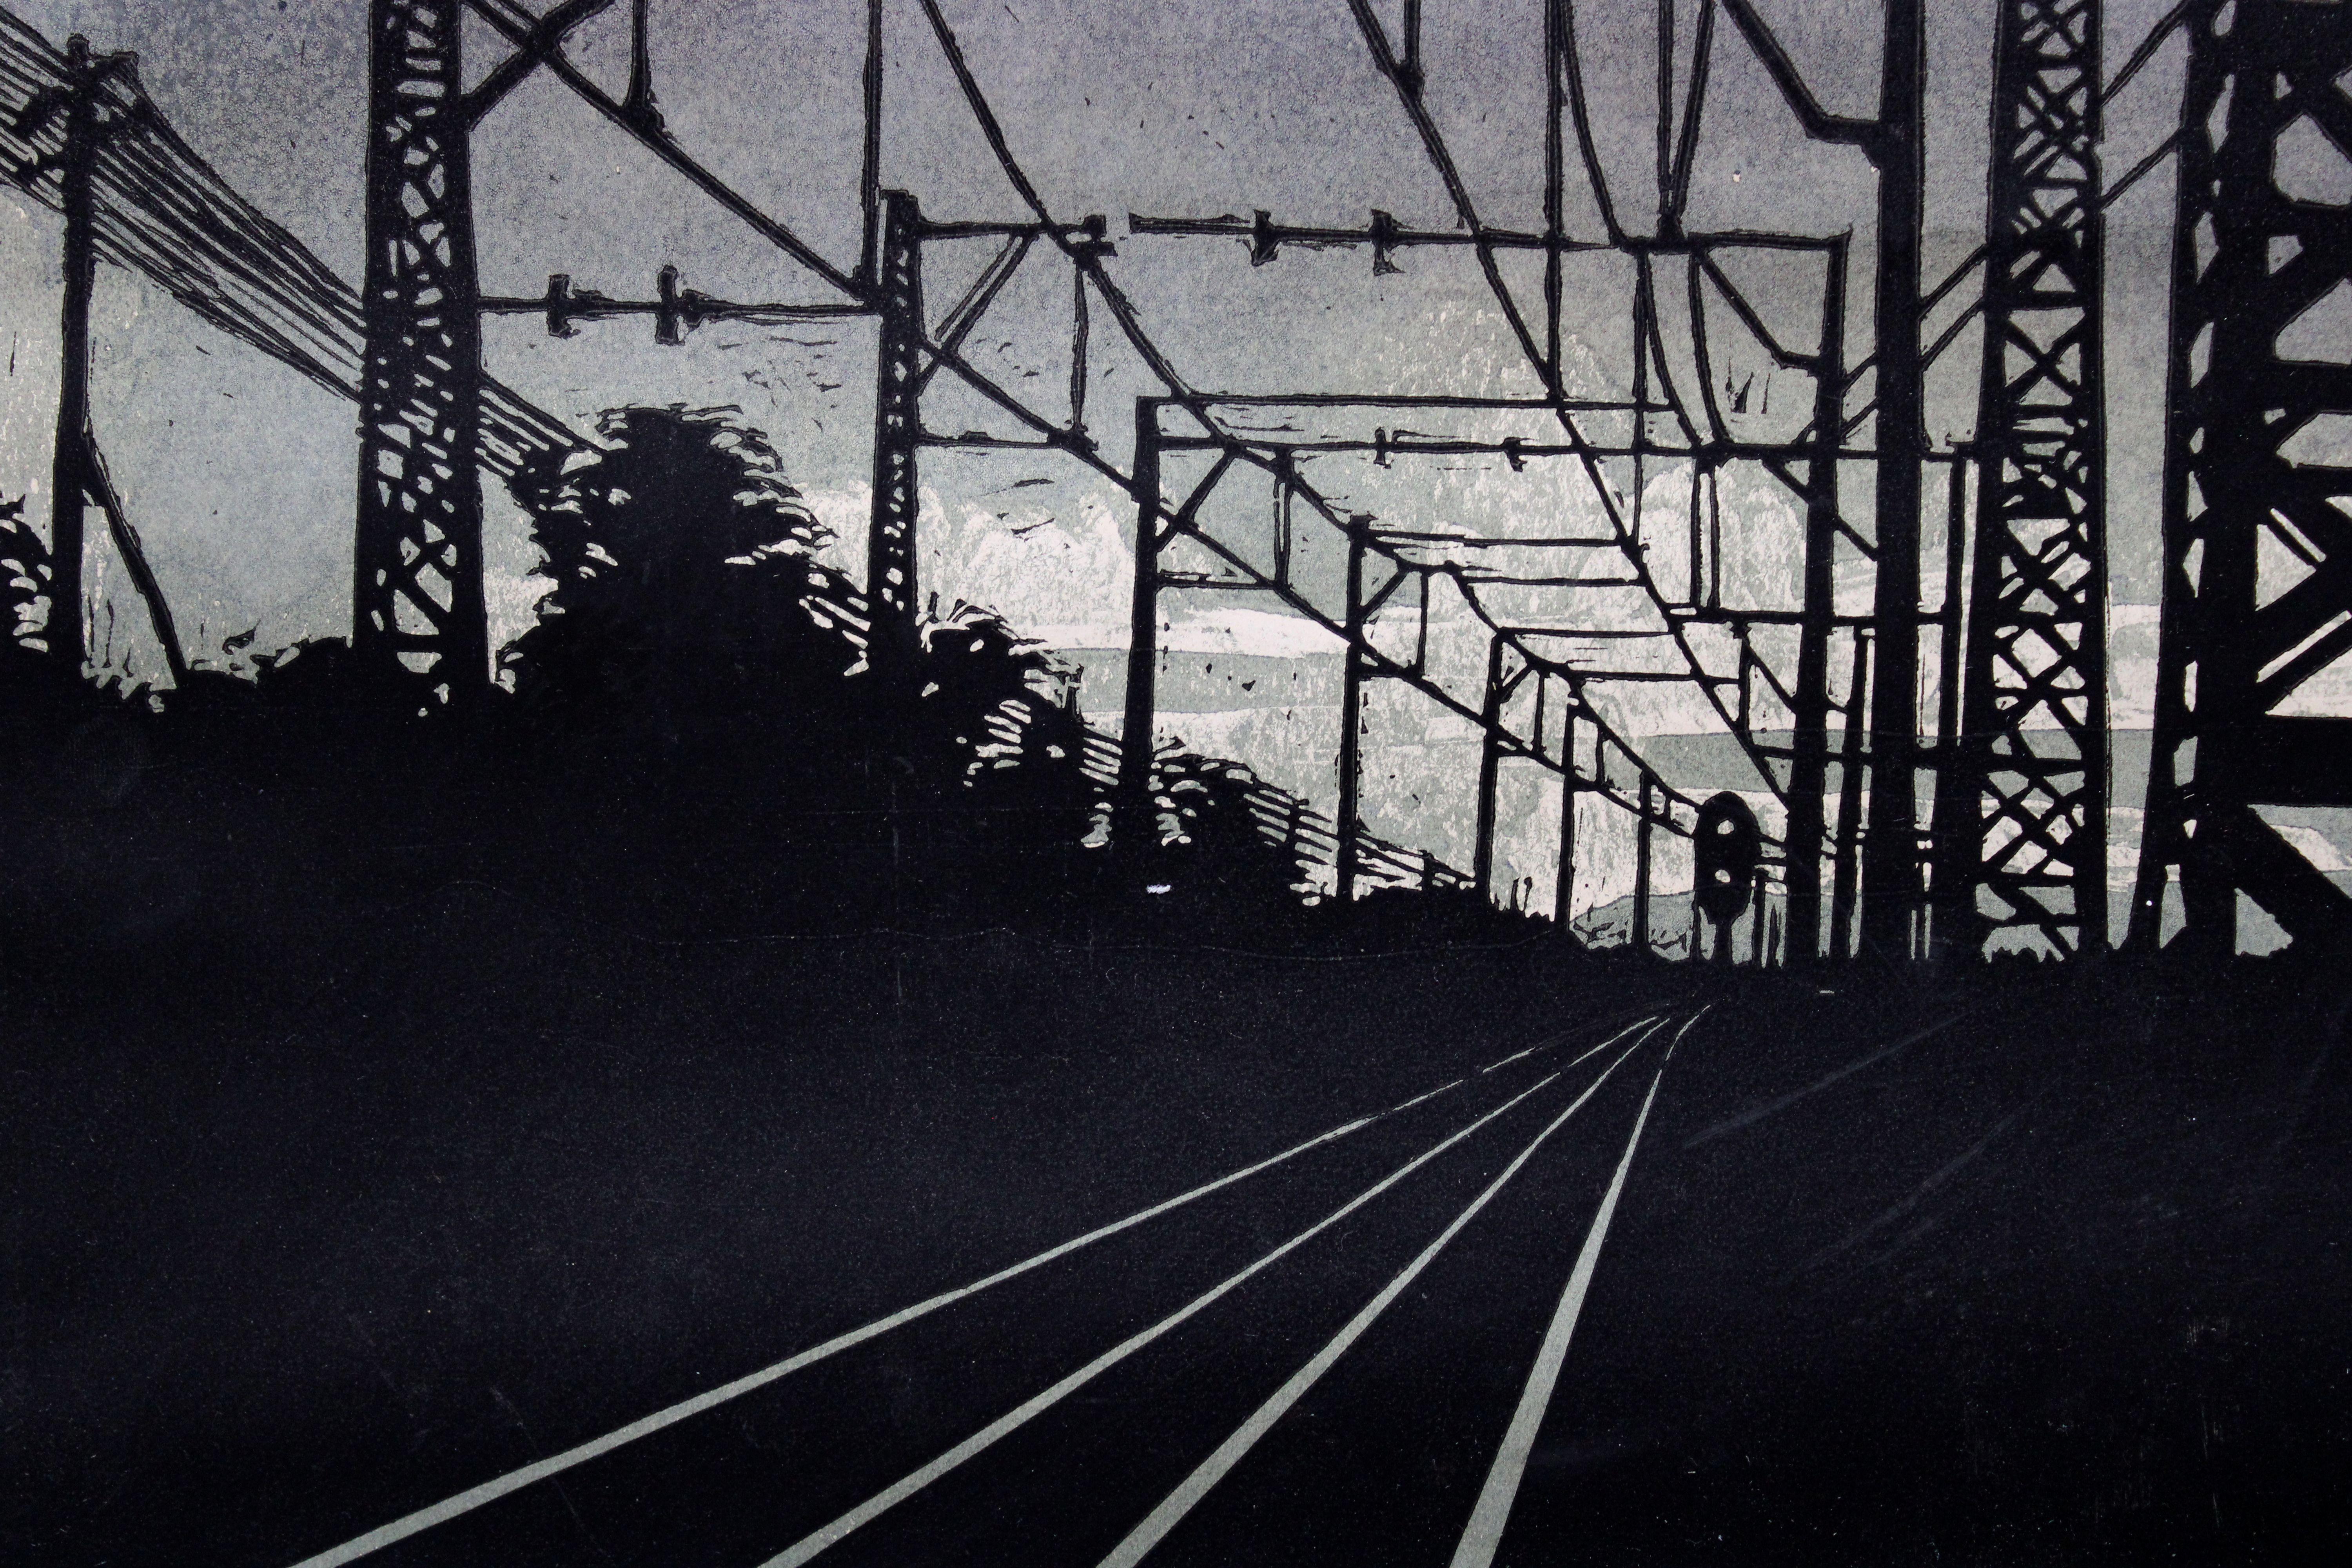 À Jurmala

1960, 1/10, papier, linogravure, 45x37 cm

L'œuvre d'art représente un environnement ferroviaire, en particulier à Jurmala, pendant les heures du soir. Les tons sombres de la composition suggèrent une atmosphère feutrée ou morose. 

La